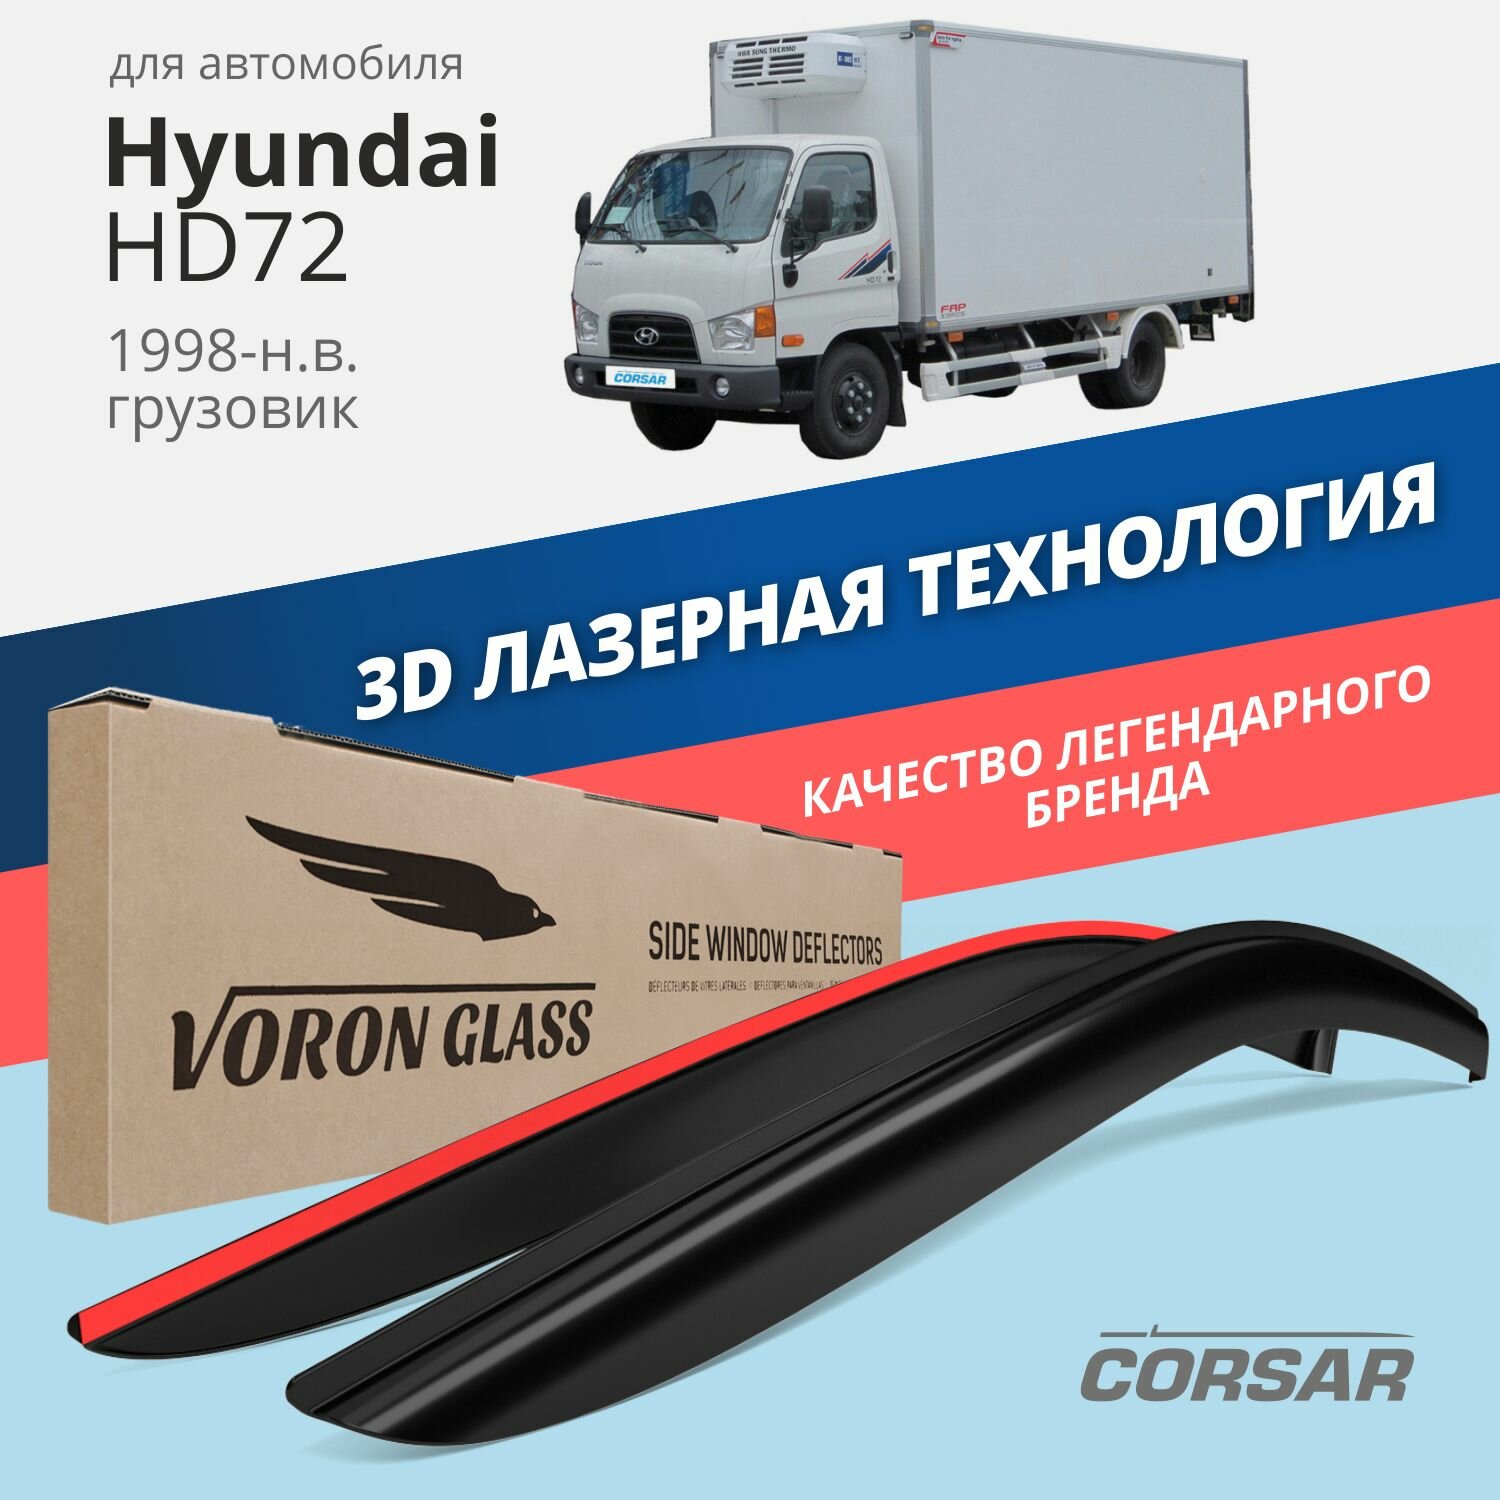 Дефлекторы окон Voron Glass серия Corsar для Hyundai HD72 1998-н. в. накладные 2 шт.